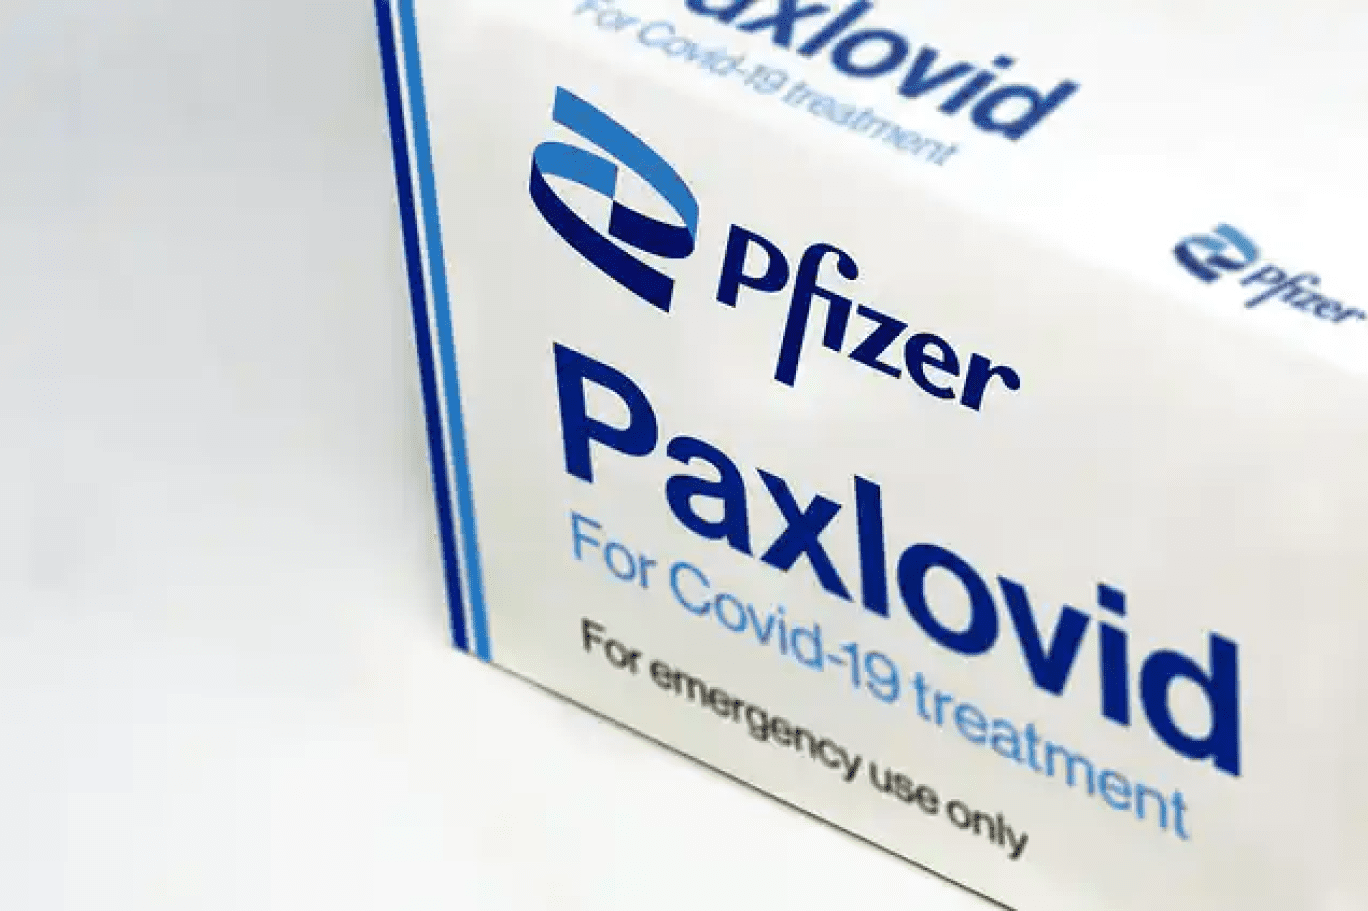 pfizer8217in kovid 19 hapinin tekrar pozitif cikan hastalara faydasi konusunda kanit yok